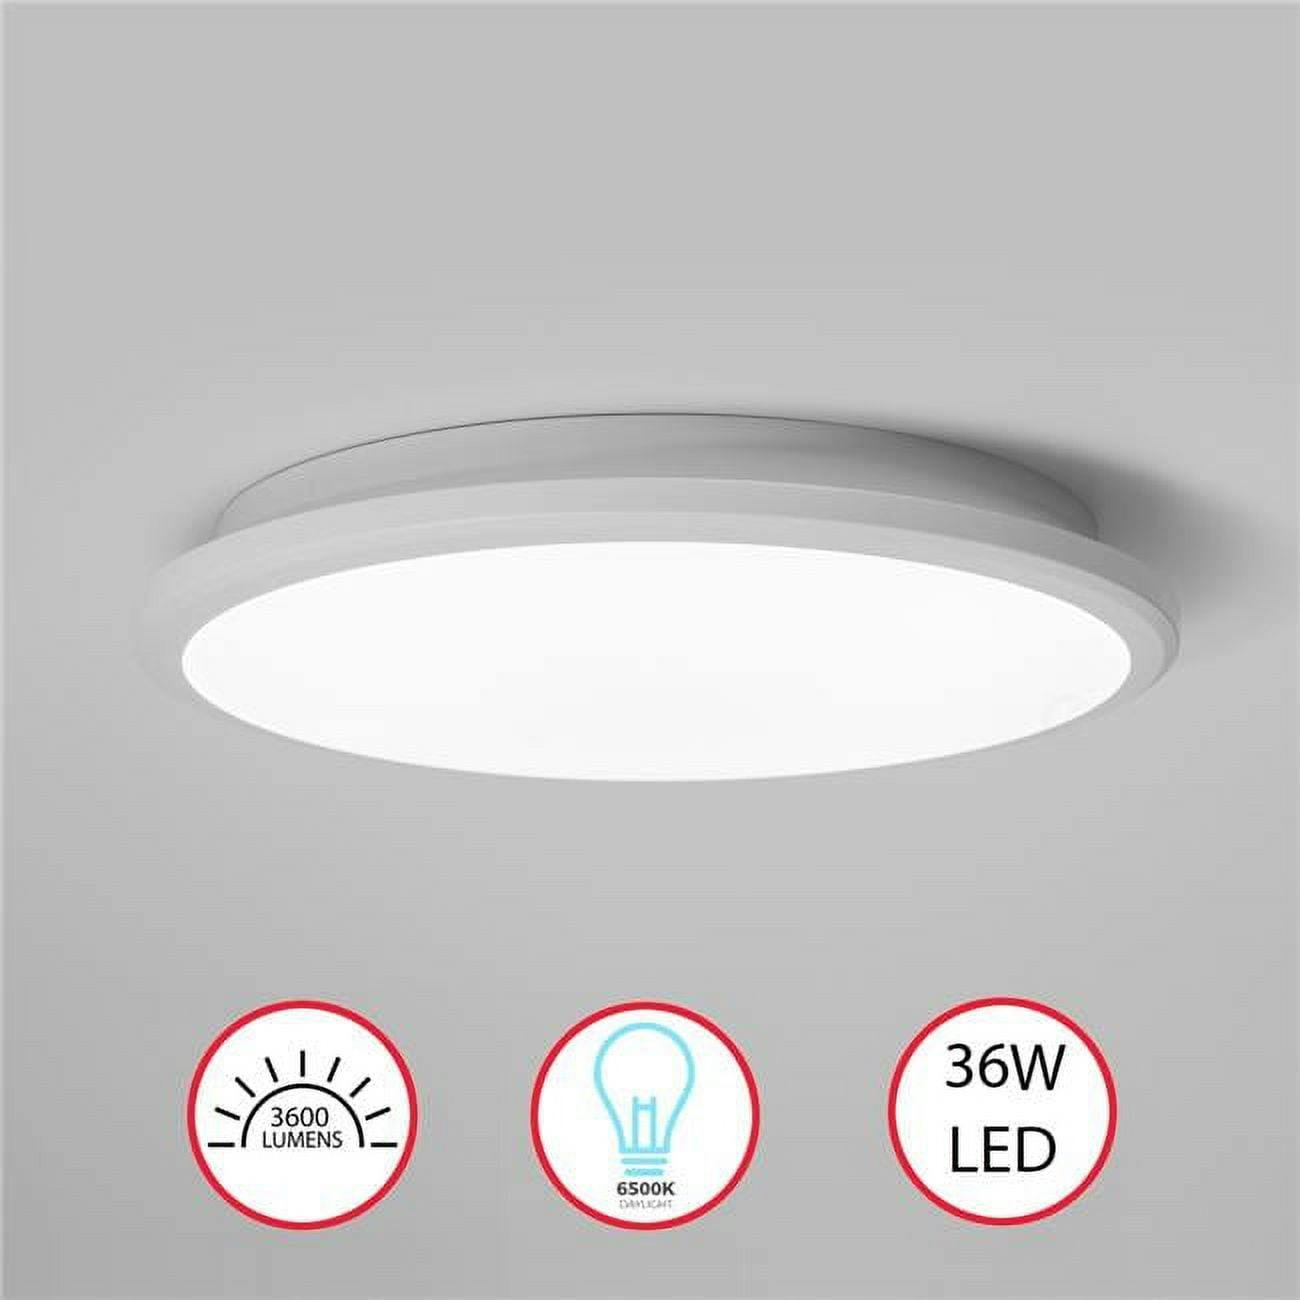 Sleek White Aluminum 16" LED Ceiling Light for Indoor/Outdoor